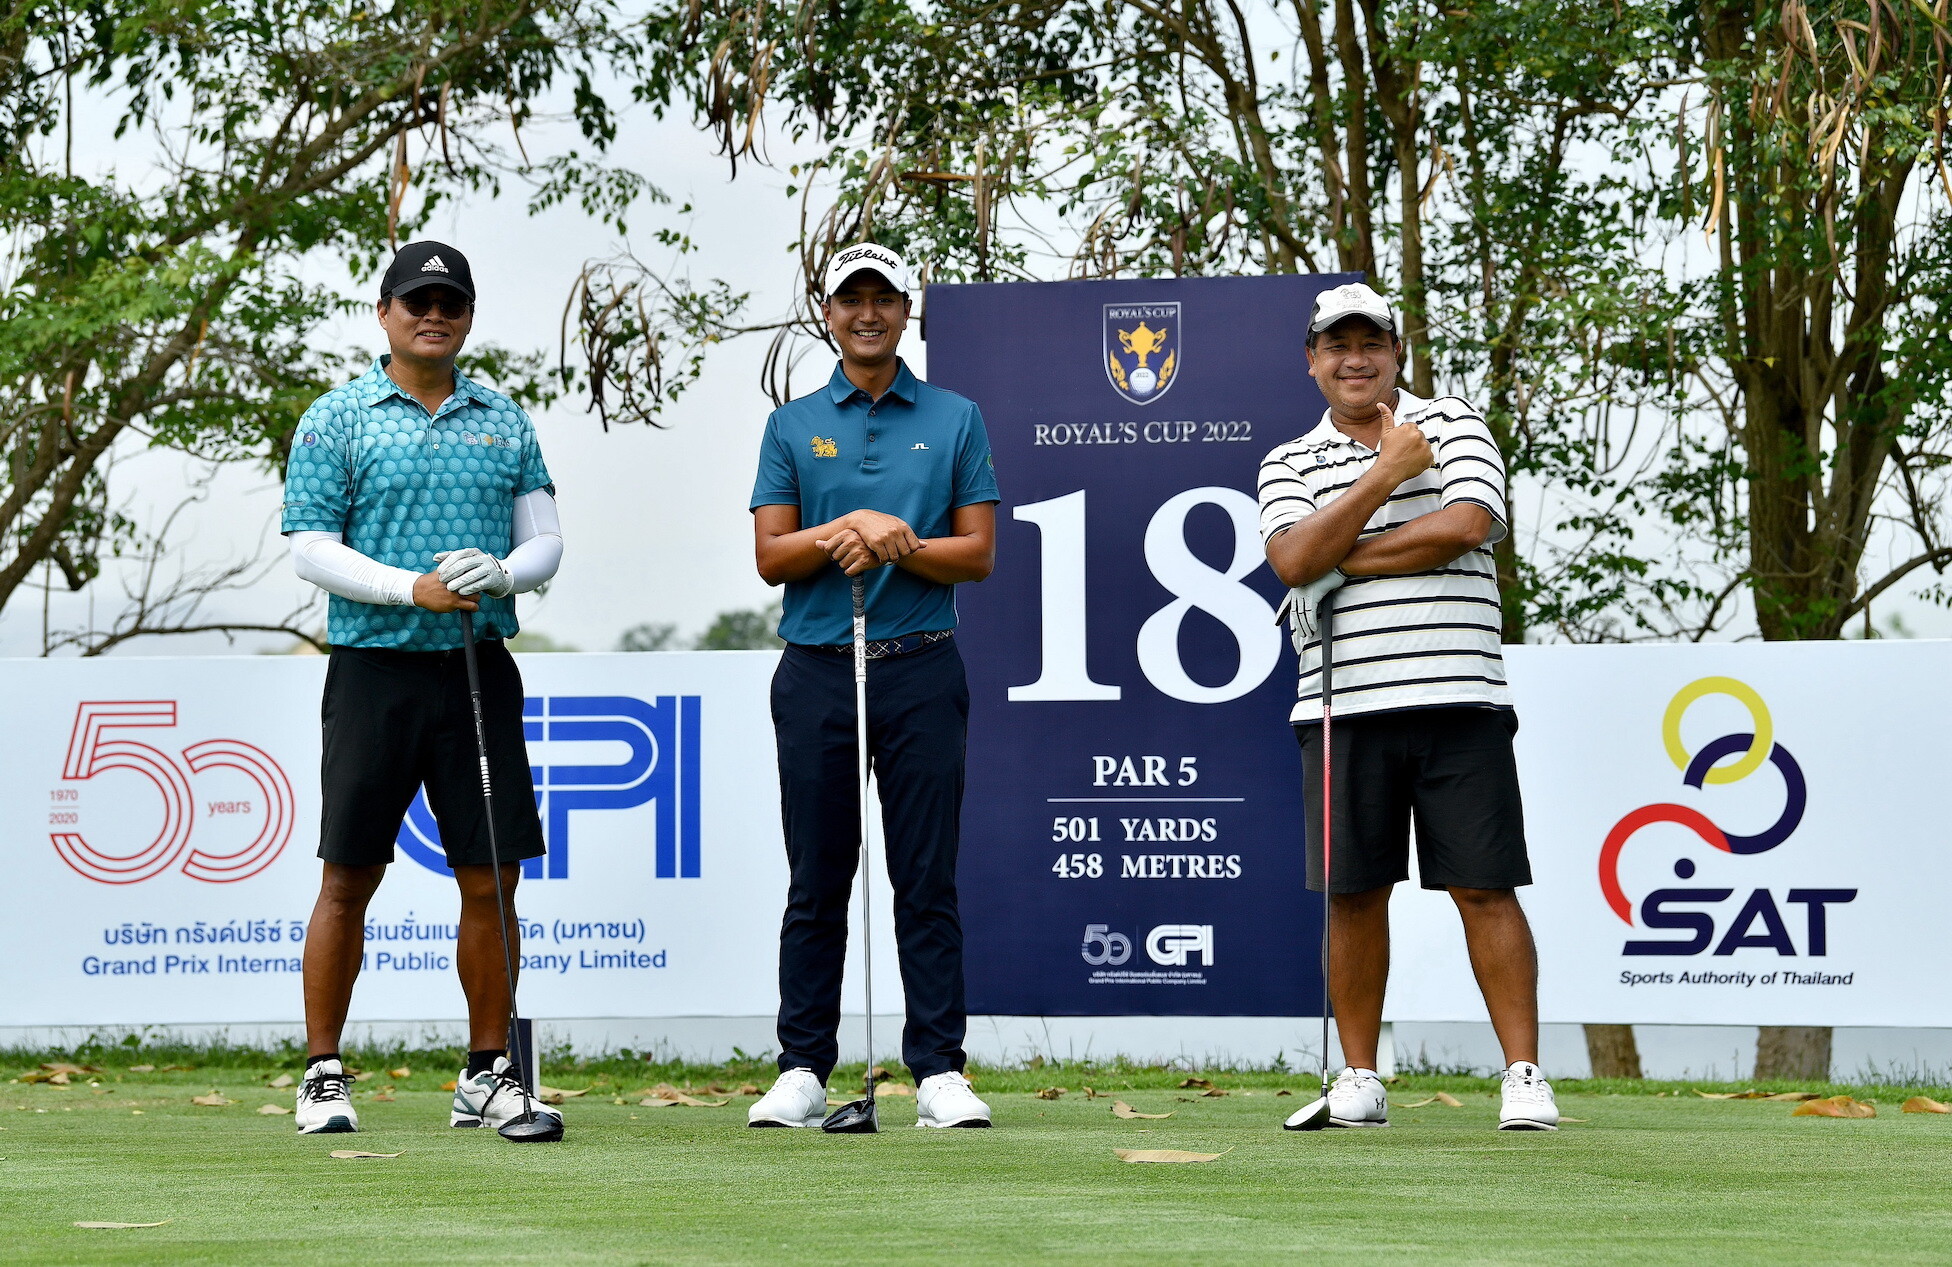 "สดมภ์-จูฮยอง" นำ 7 นักกอล์ฟเอเชียน ทัวร์ ร่วมแมตช์พิเศษ "Private golf game"